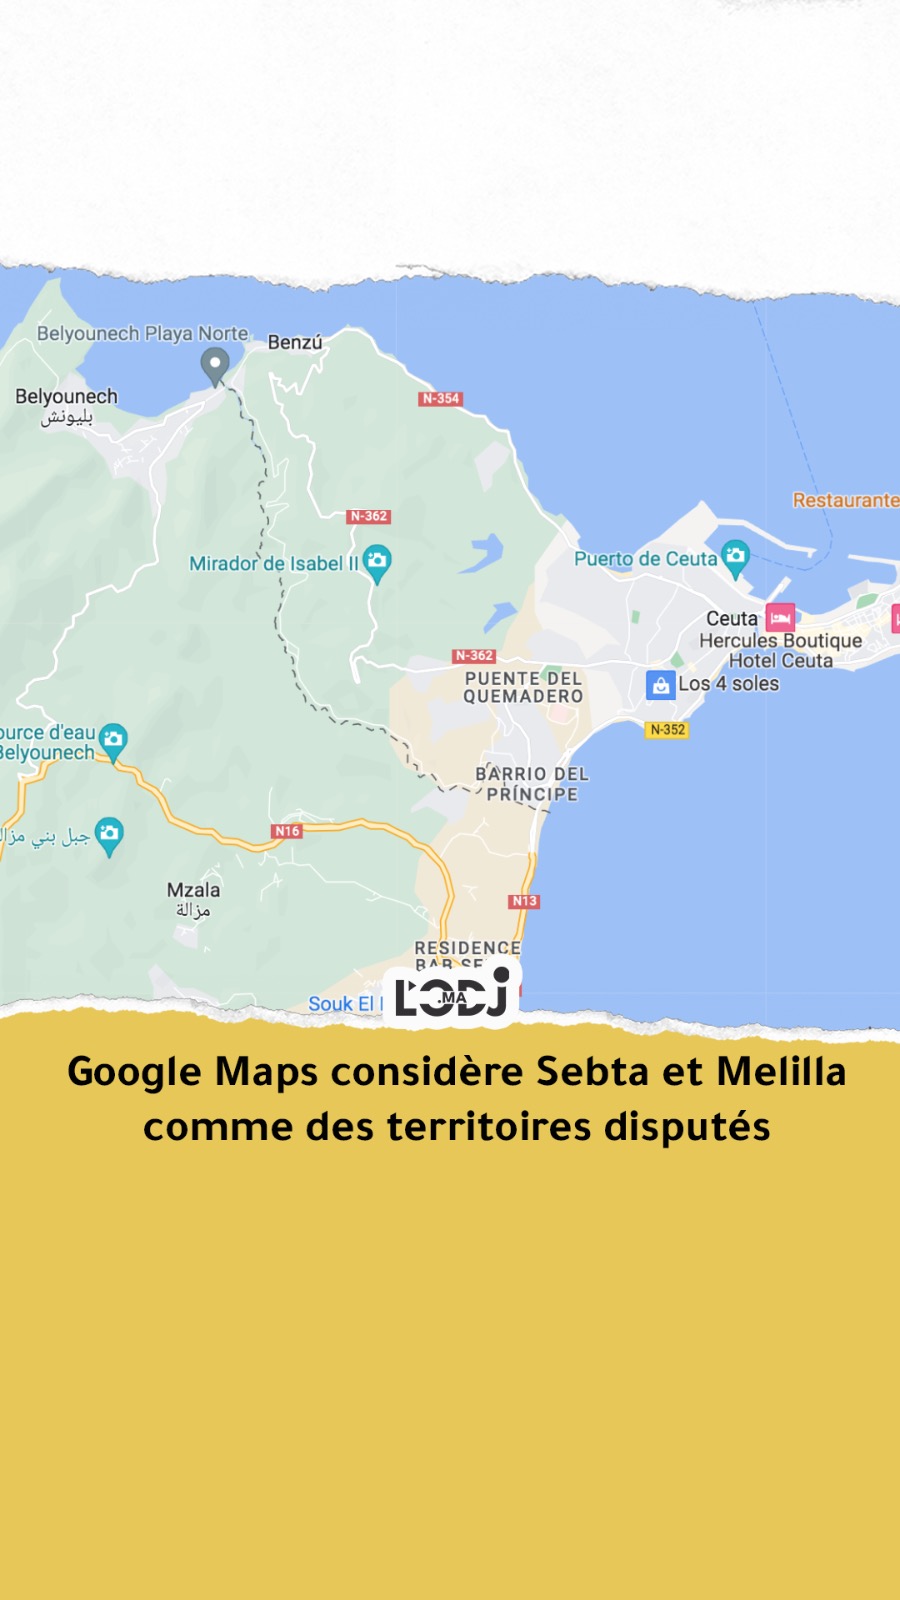 Google Maps considère Sebta et Melilla comme des territoires disputés et déclenche la colère des Espagnols